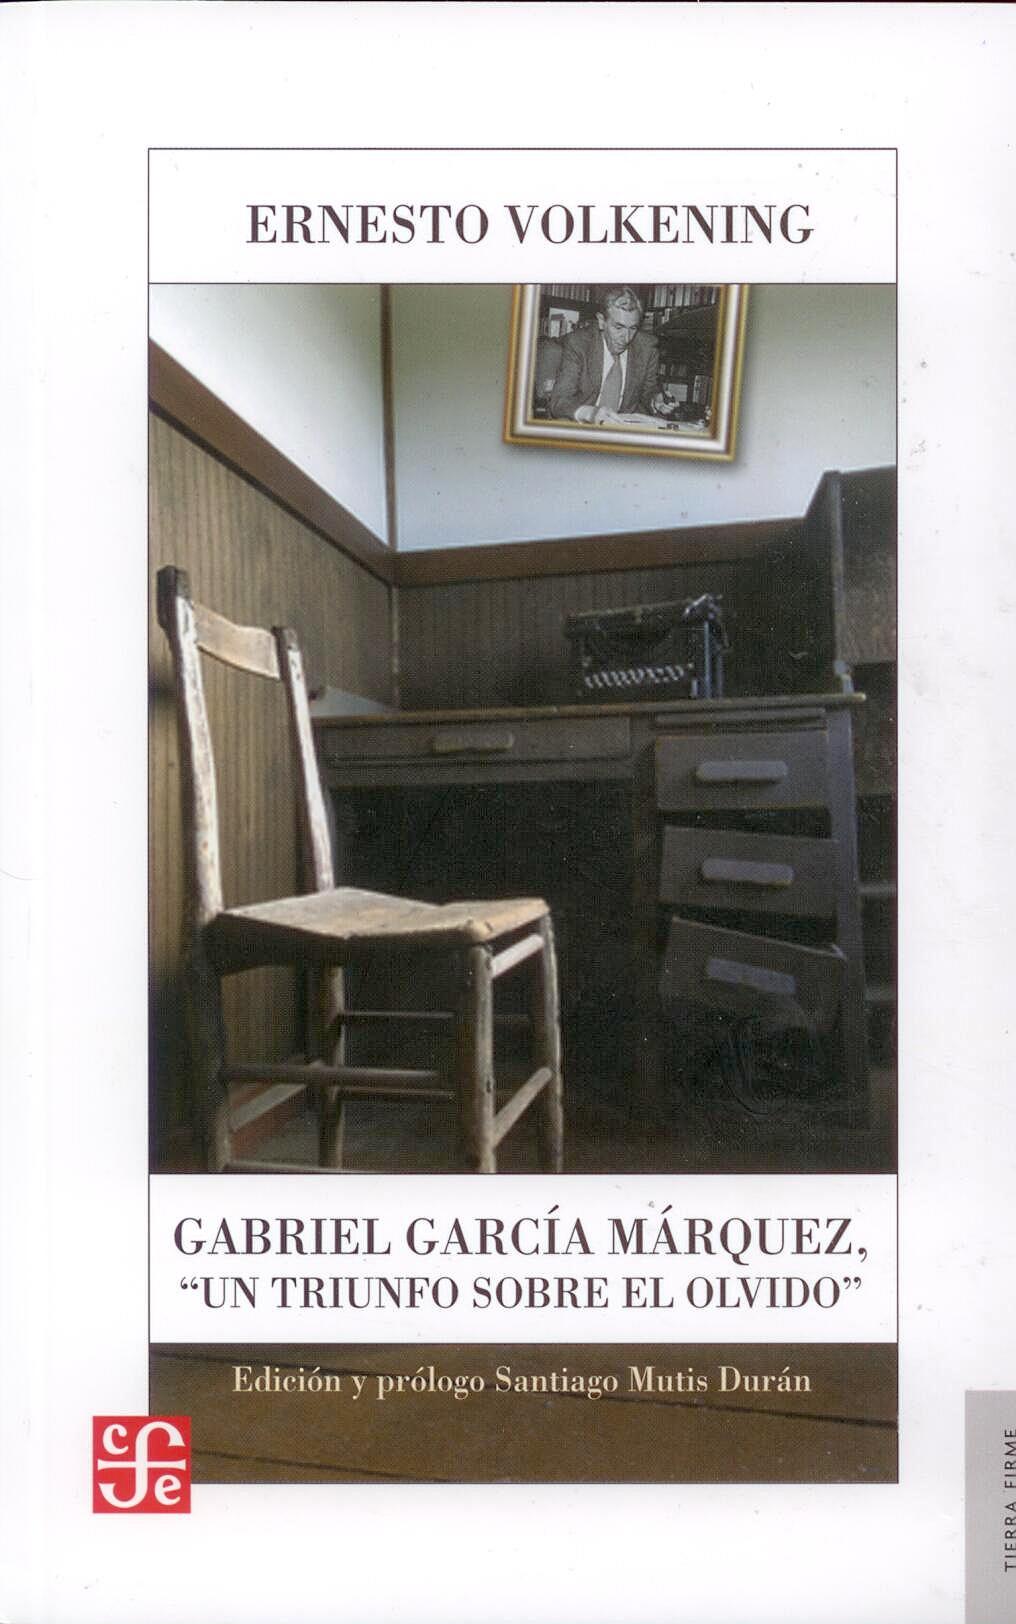 Gabriel Garcia Marquez "Un triunfo sobre el olvido"